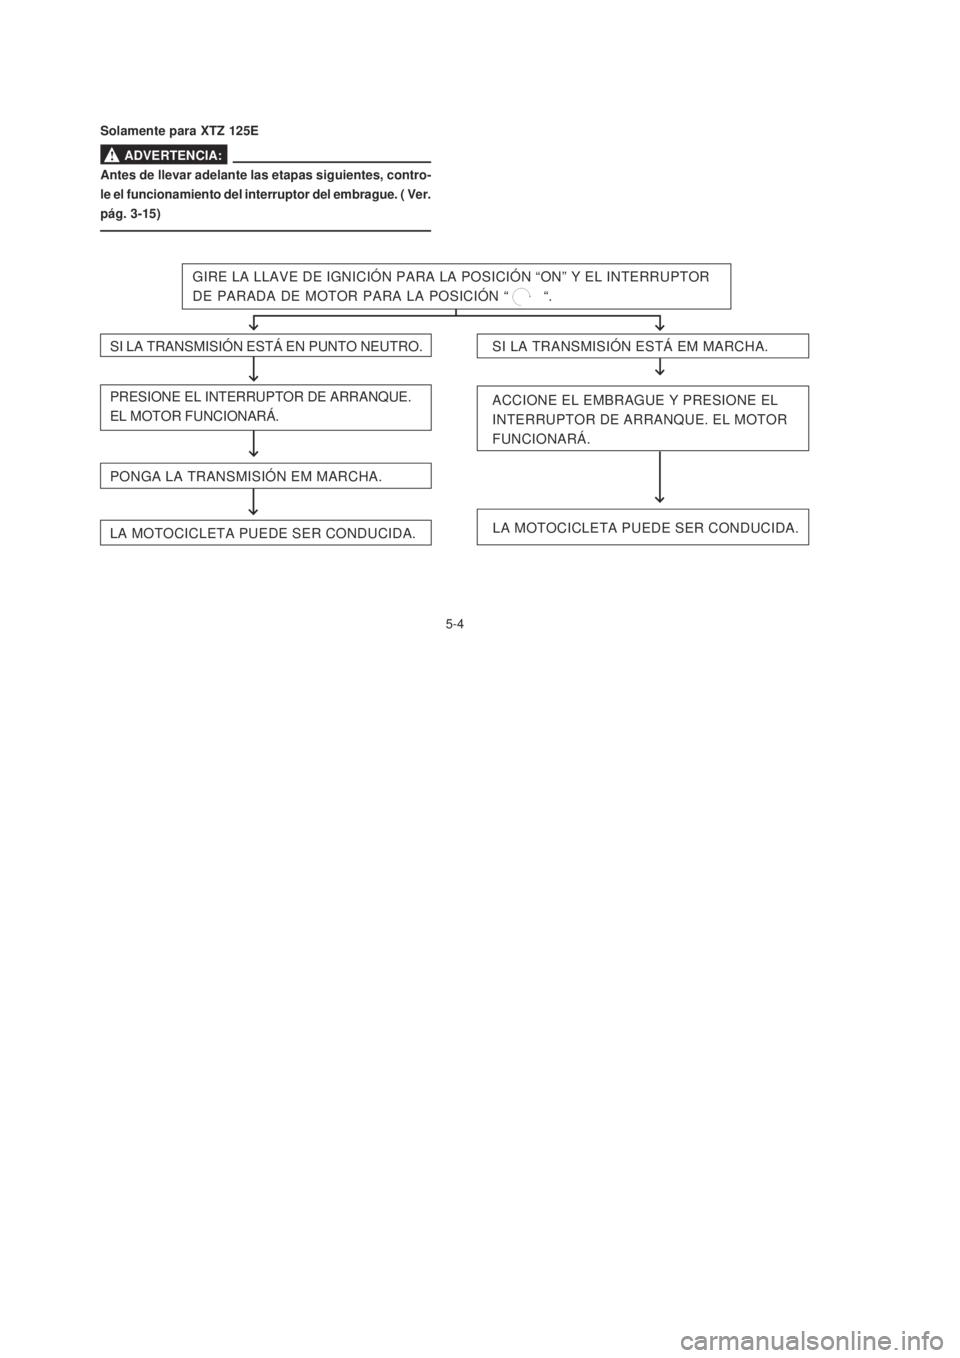 YAMAHA XTZ125 2007  Manuale de Empleo (in Spanish) 5-4
5-4
Antes de llevar adelante las etapas siguientes, contro-
le el funcionamiento del interruptor del embrague. ( Ver.
pág. 3-15)
GIRE LA LLAVE DE IGNICIÓN PARA LA POSICIÓN “ON” Y EL INTERRU